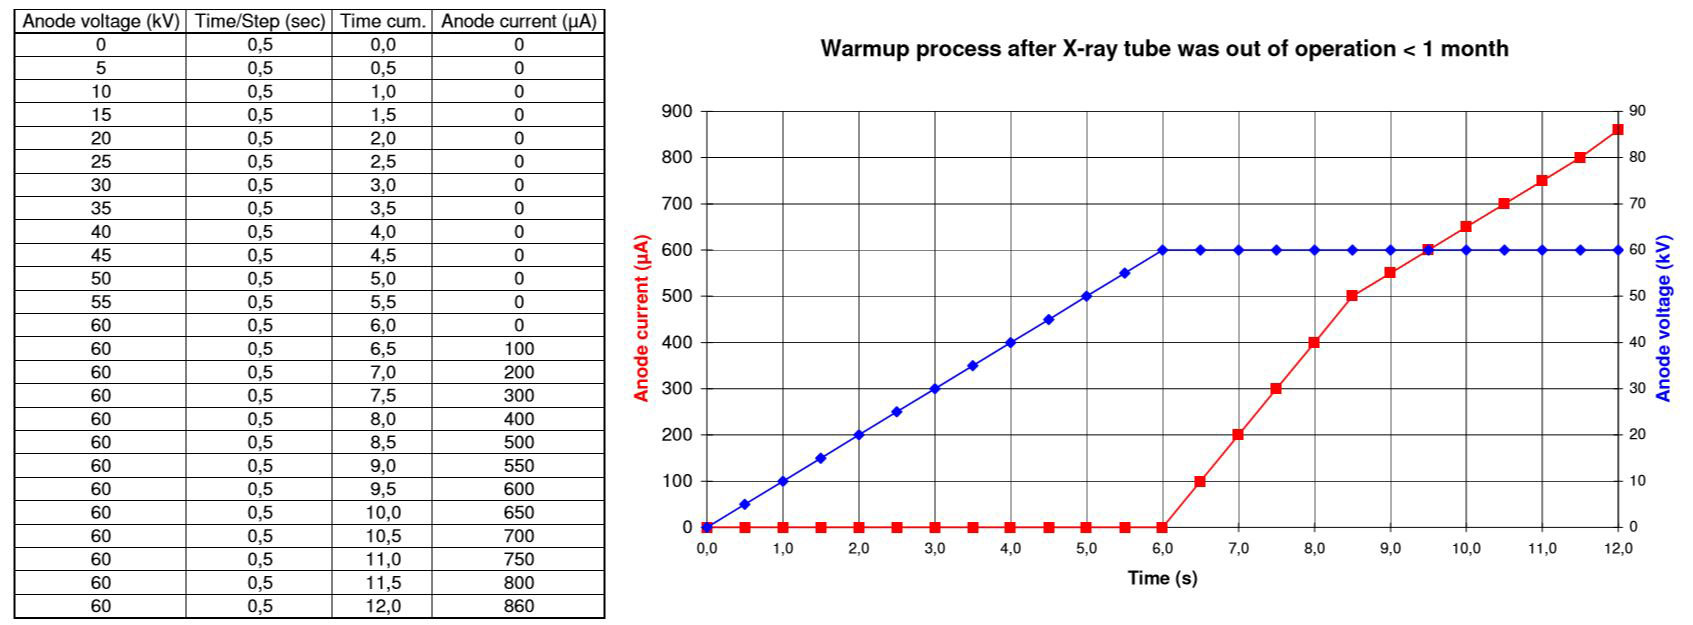 WarmUp Prozesse für 60kV Röntgenquellen außer Betrieb < 1 Monat